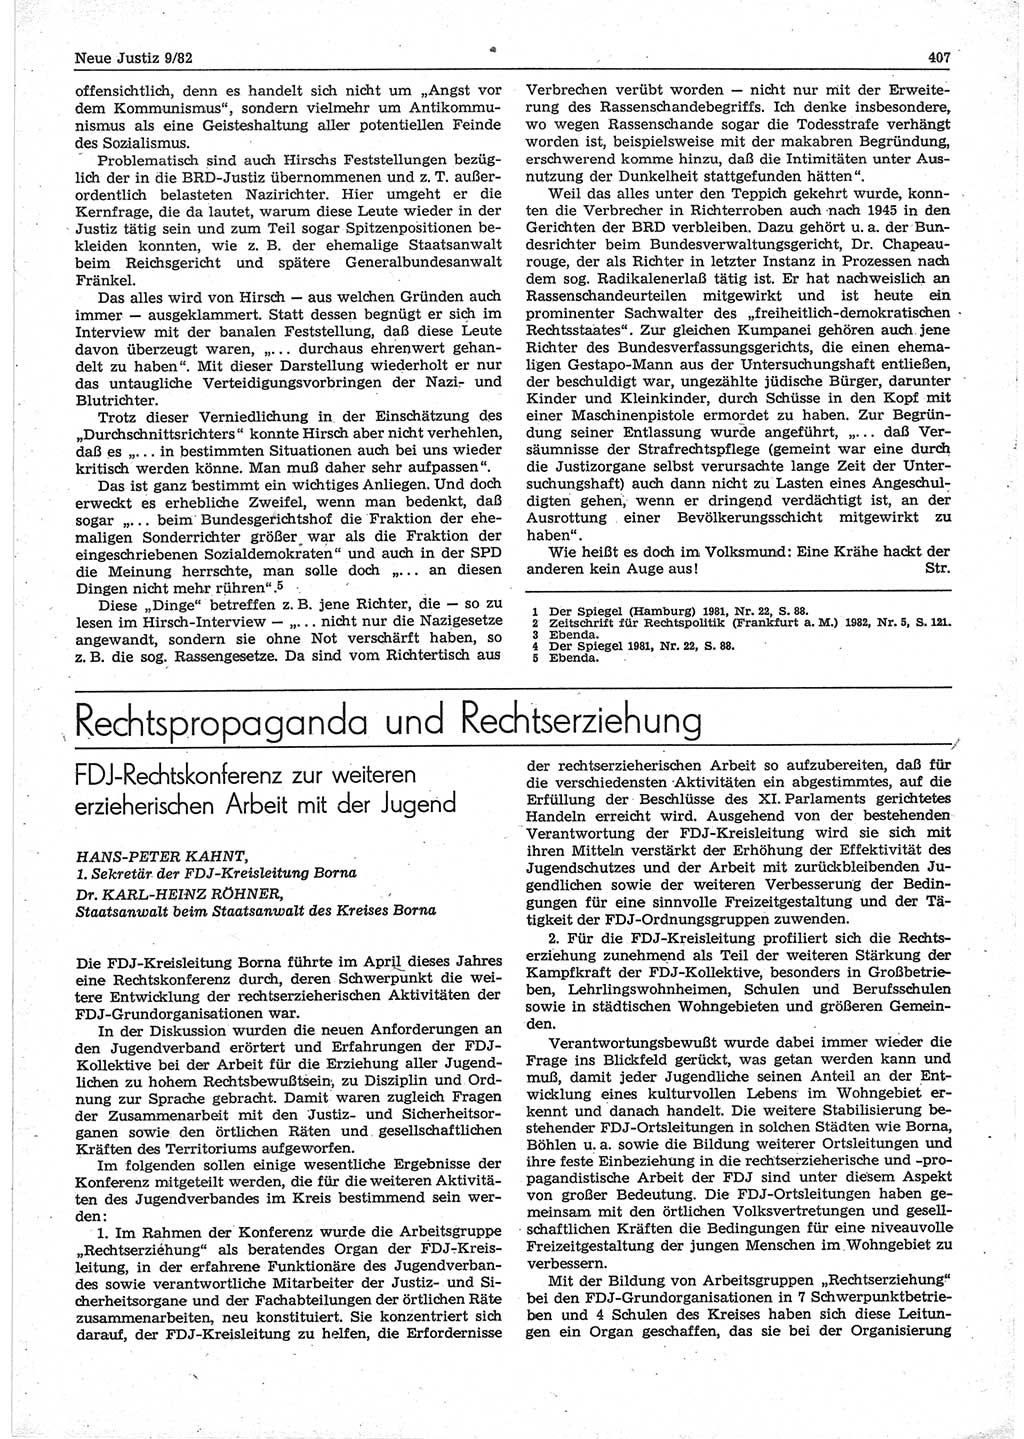 Neue Justiz (NJ), Zeitschrift für sozialistisches Recht und Gesetzlichkeit [Deutsche Demokratische Republik (DDR)], 36. Jahrgang 1982, Seite 407 (NJ DDR 1982, S. 407)